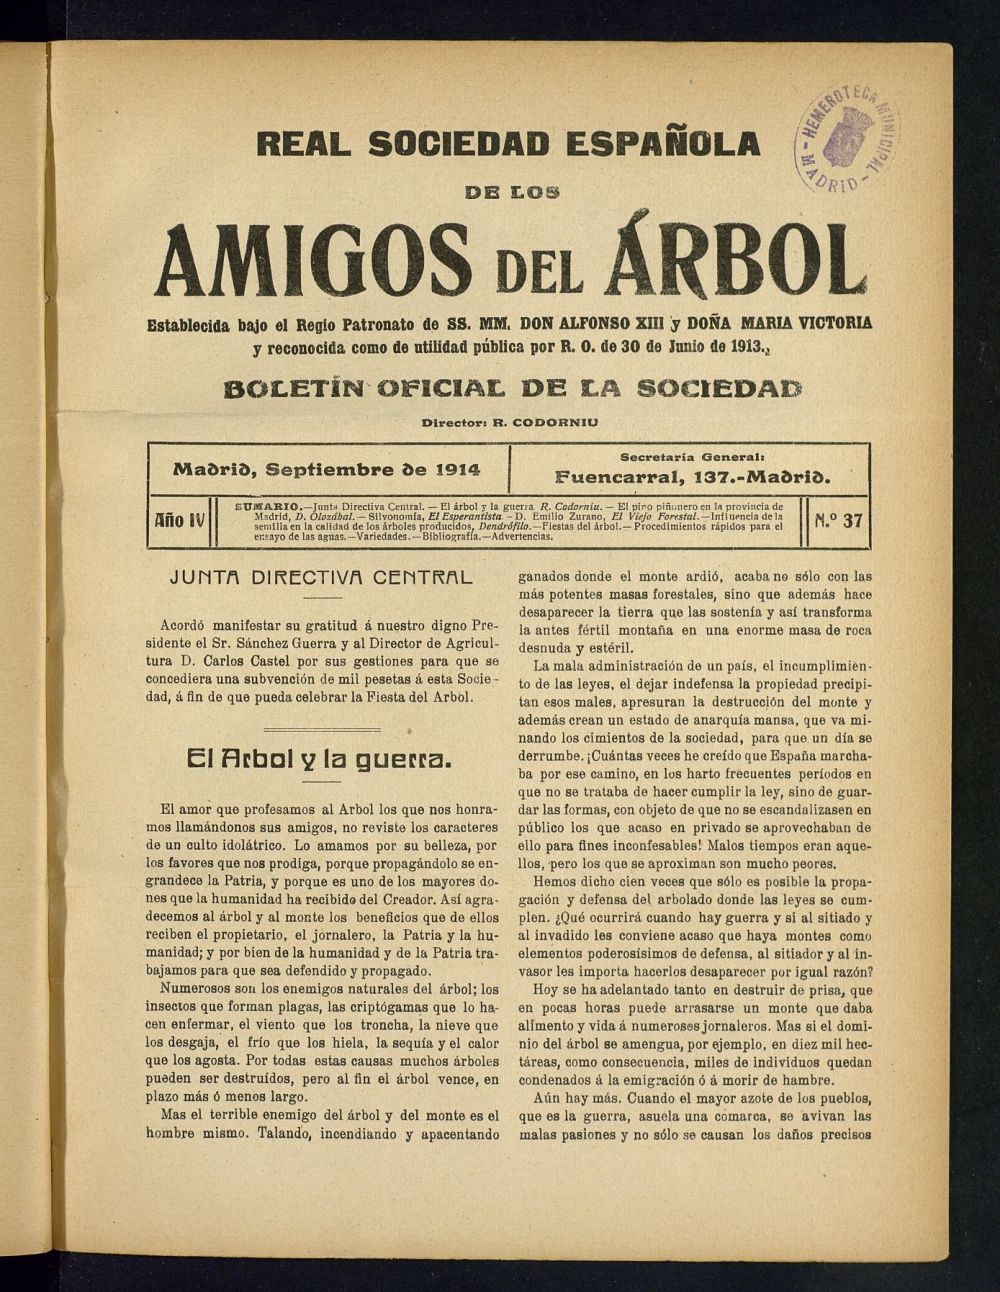 Boletn Comisin organizadora de la Sociedad Espaola de los amigos del rbol de septiembre de 1914